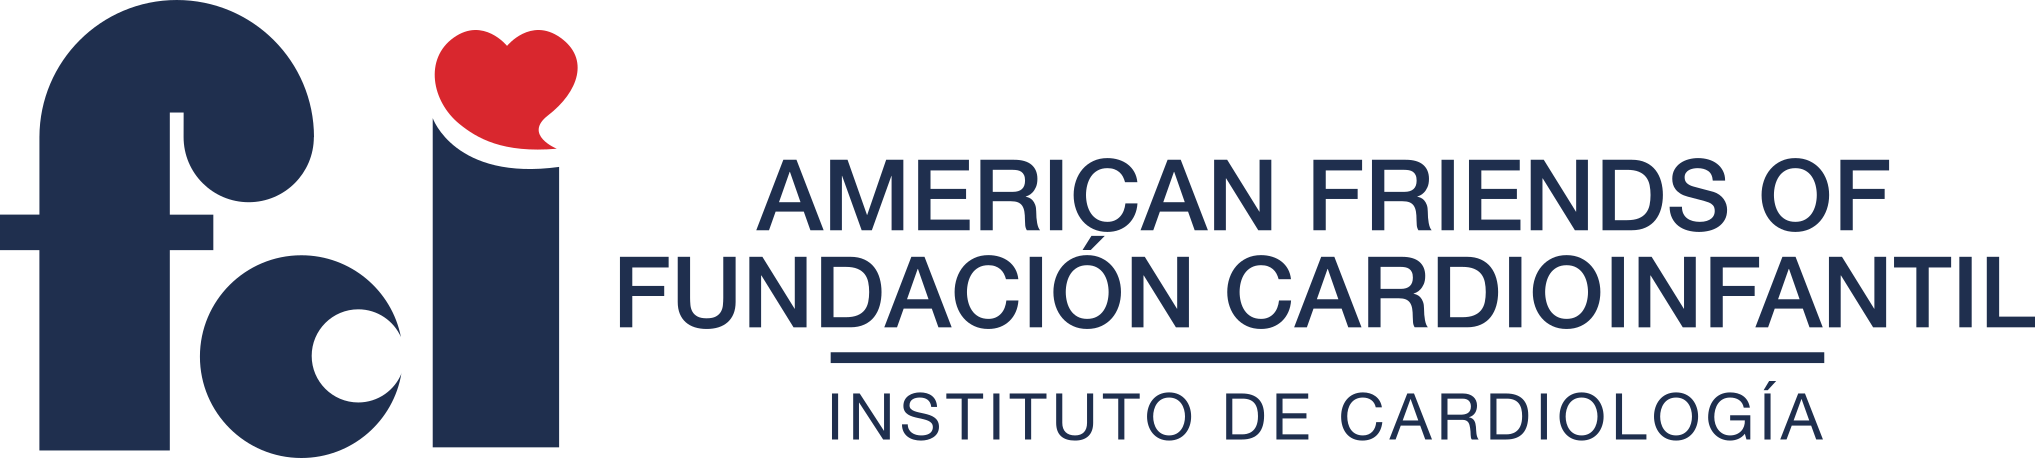 Fundación Cardioinfantil logo